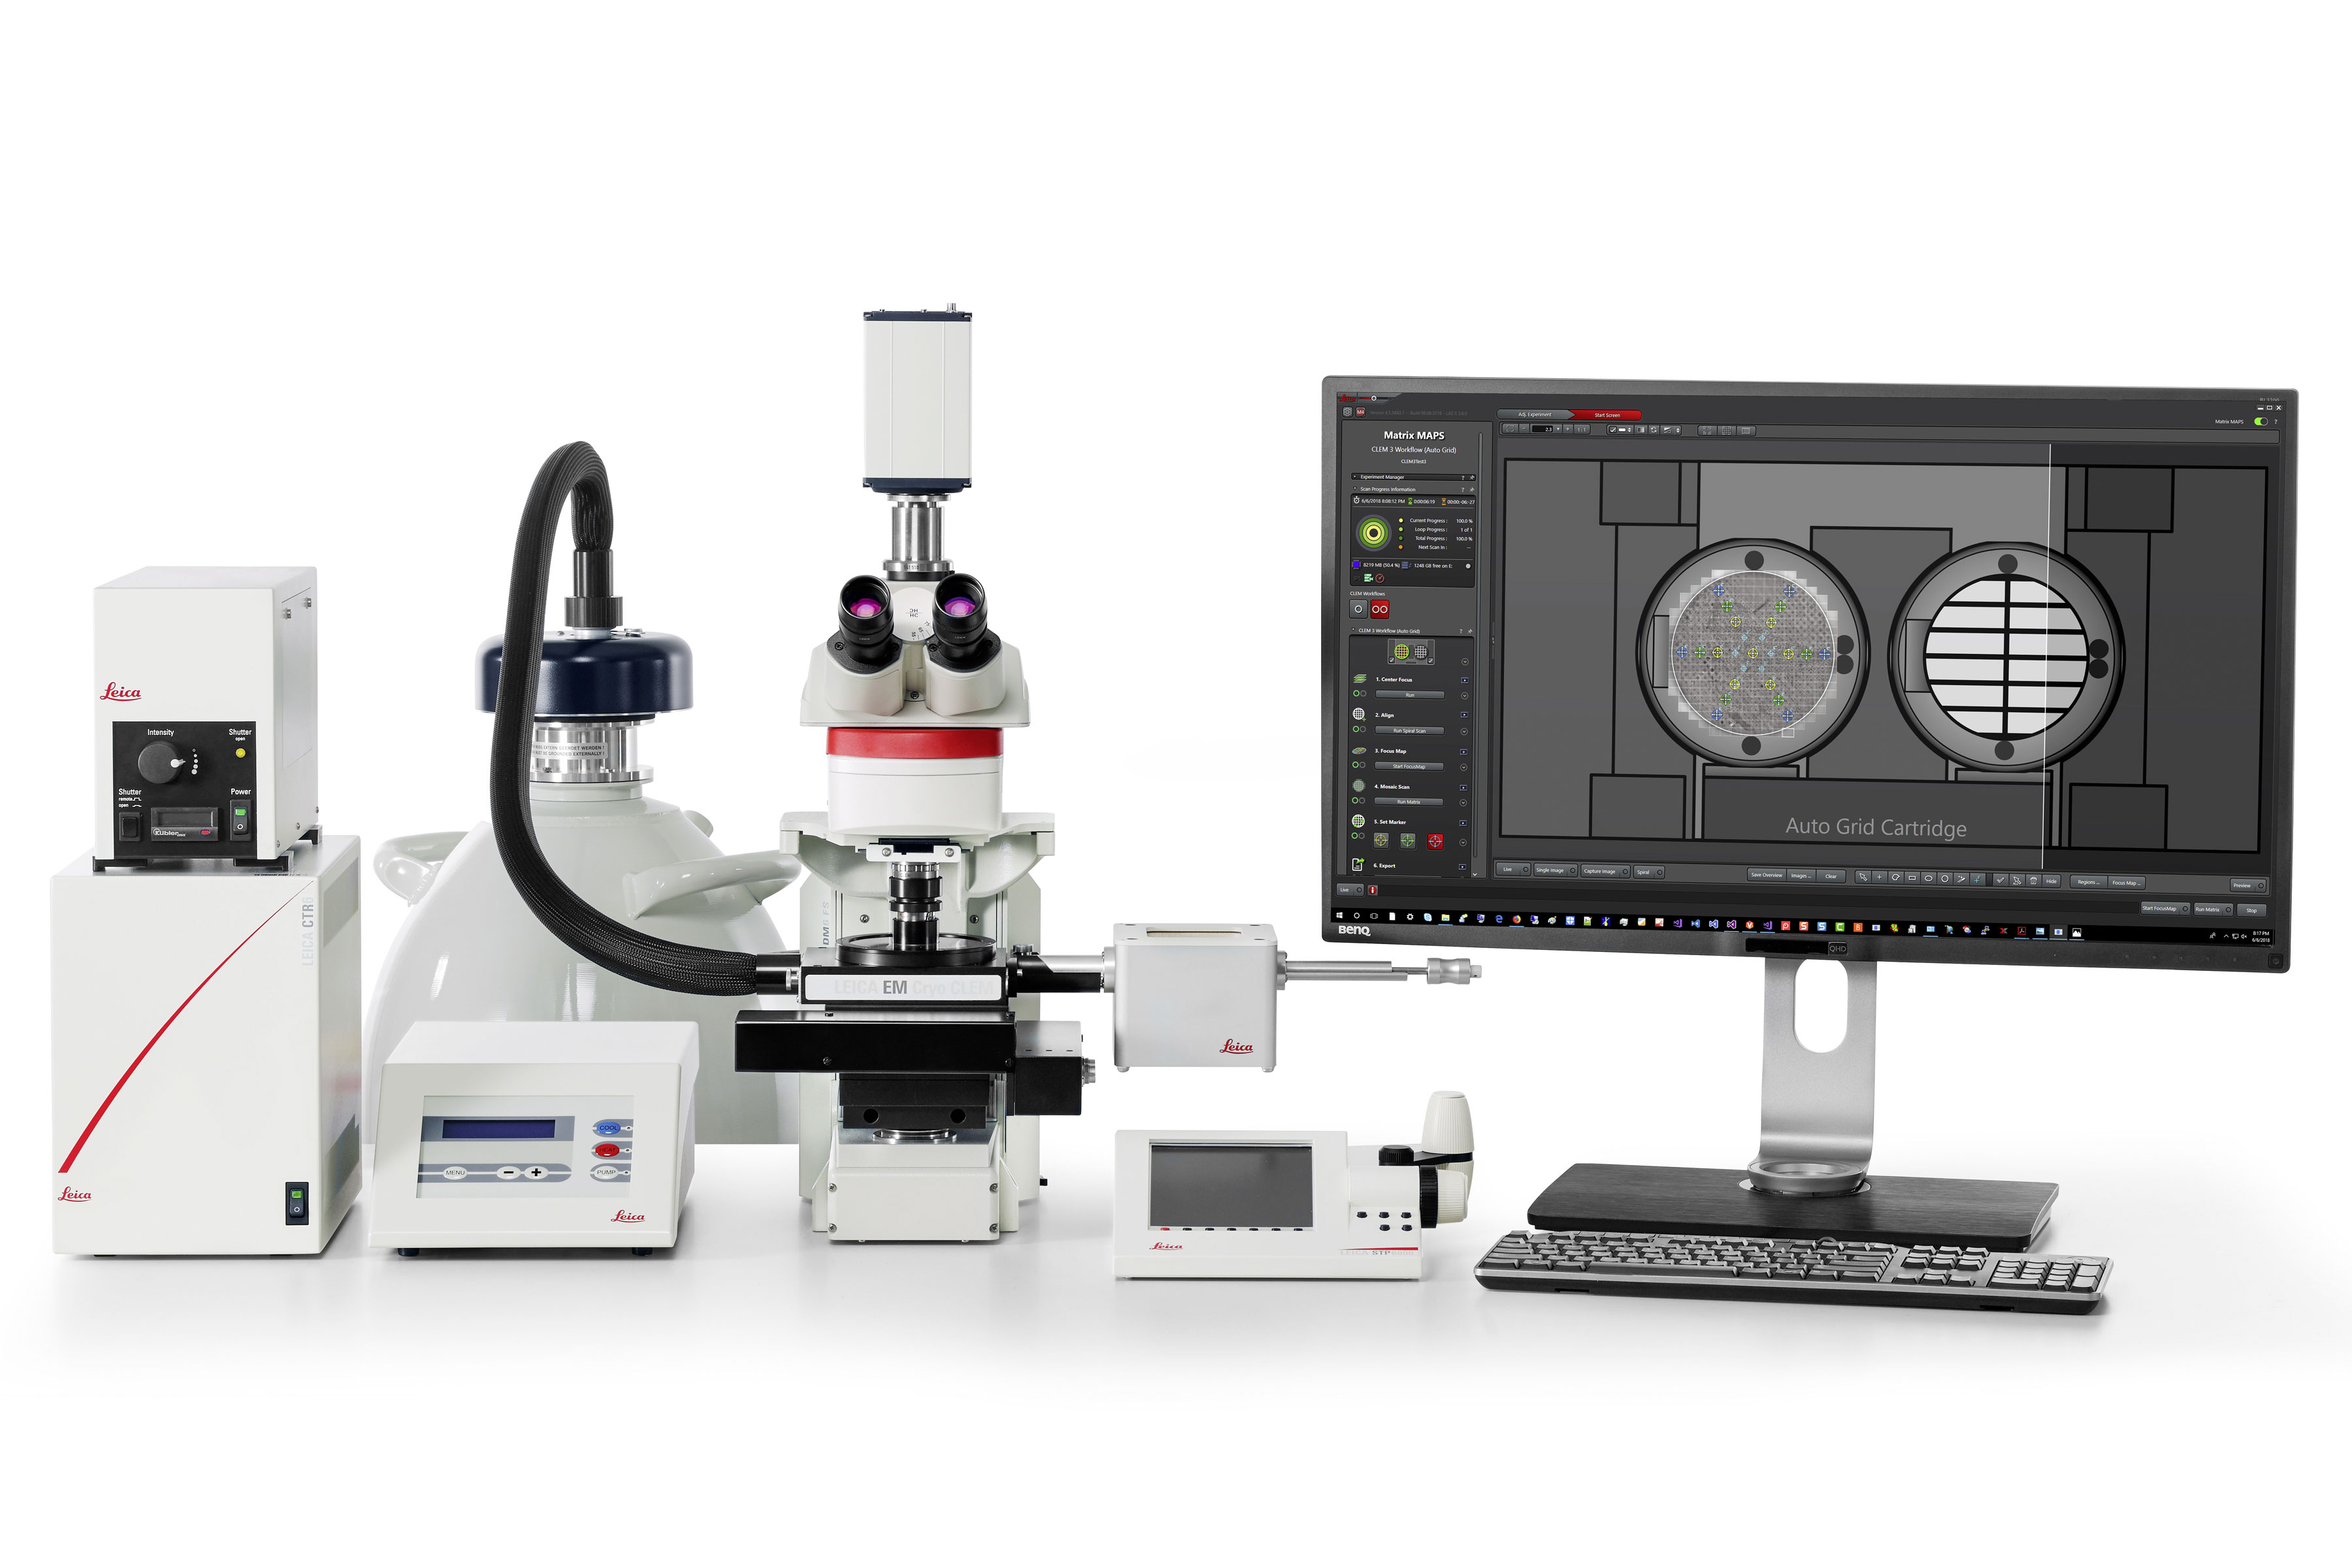 ライカ正立デジタル顕微鏡 DM6 FS を組み合わせたライカ EM Cryo CLEM システム